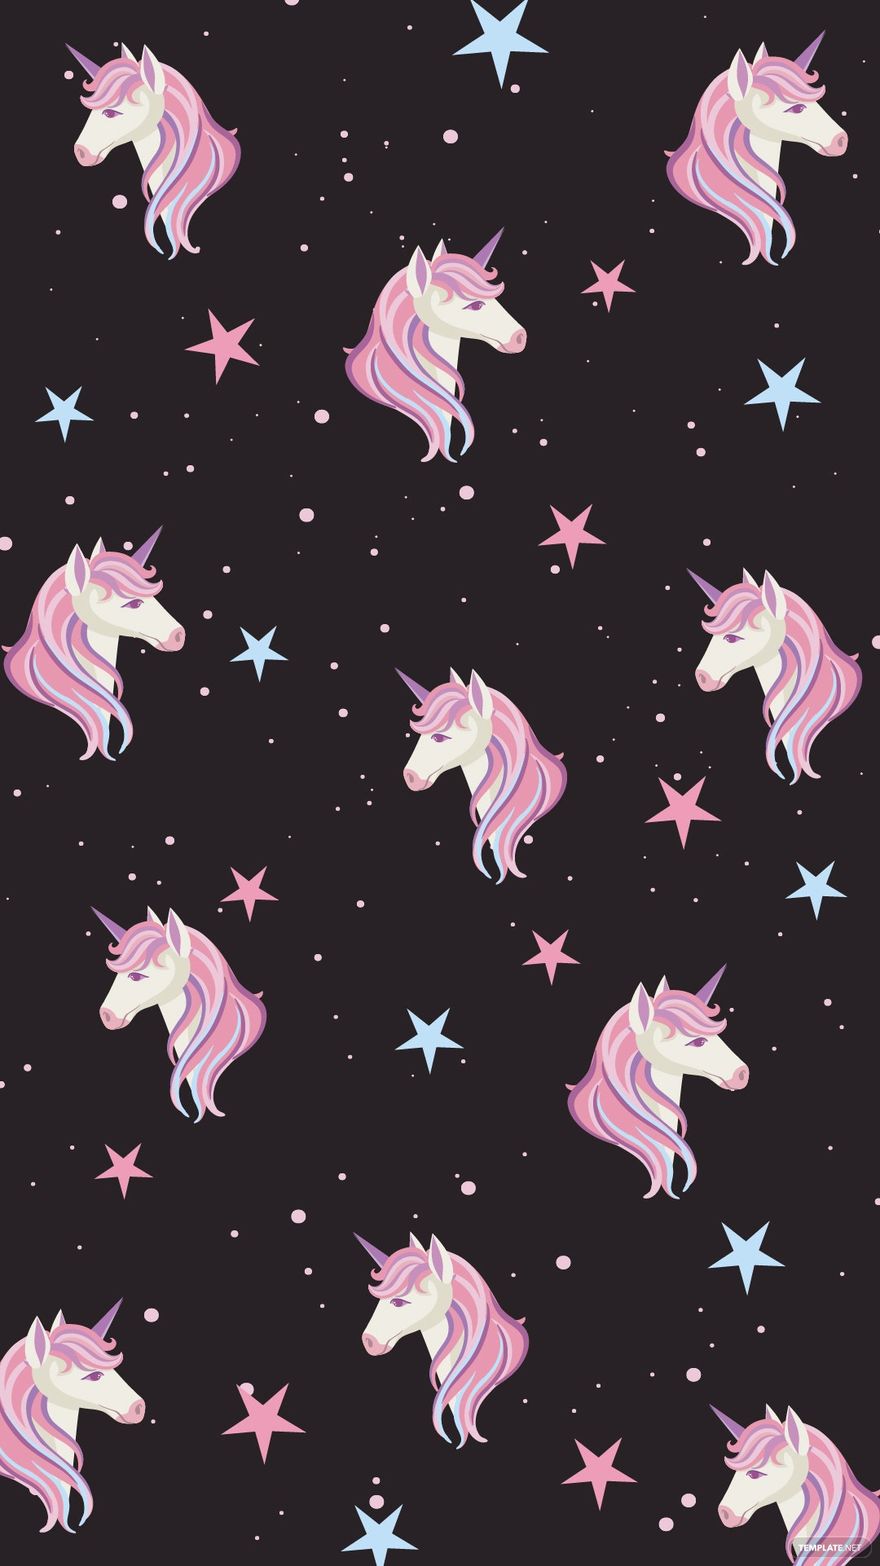 Free IPhone Unicorn Background - EPS, Illustrator, JPG, SVG 